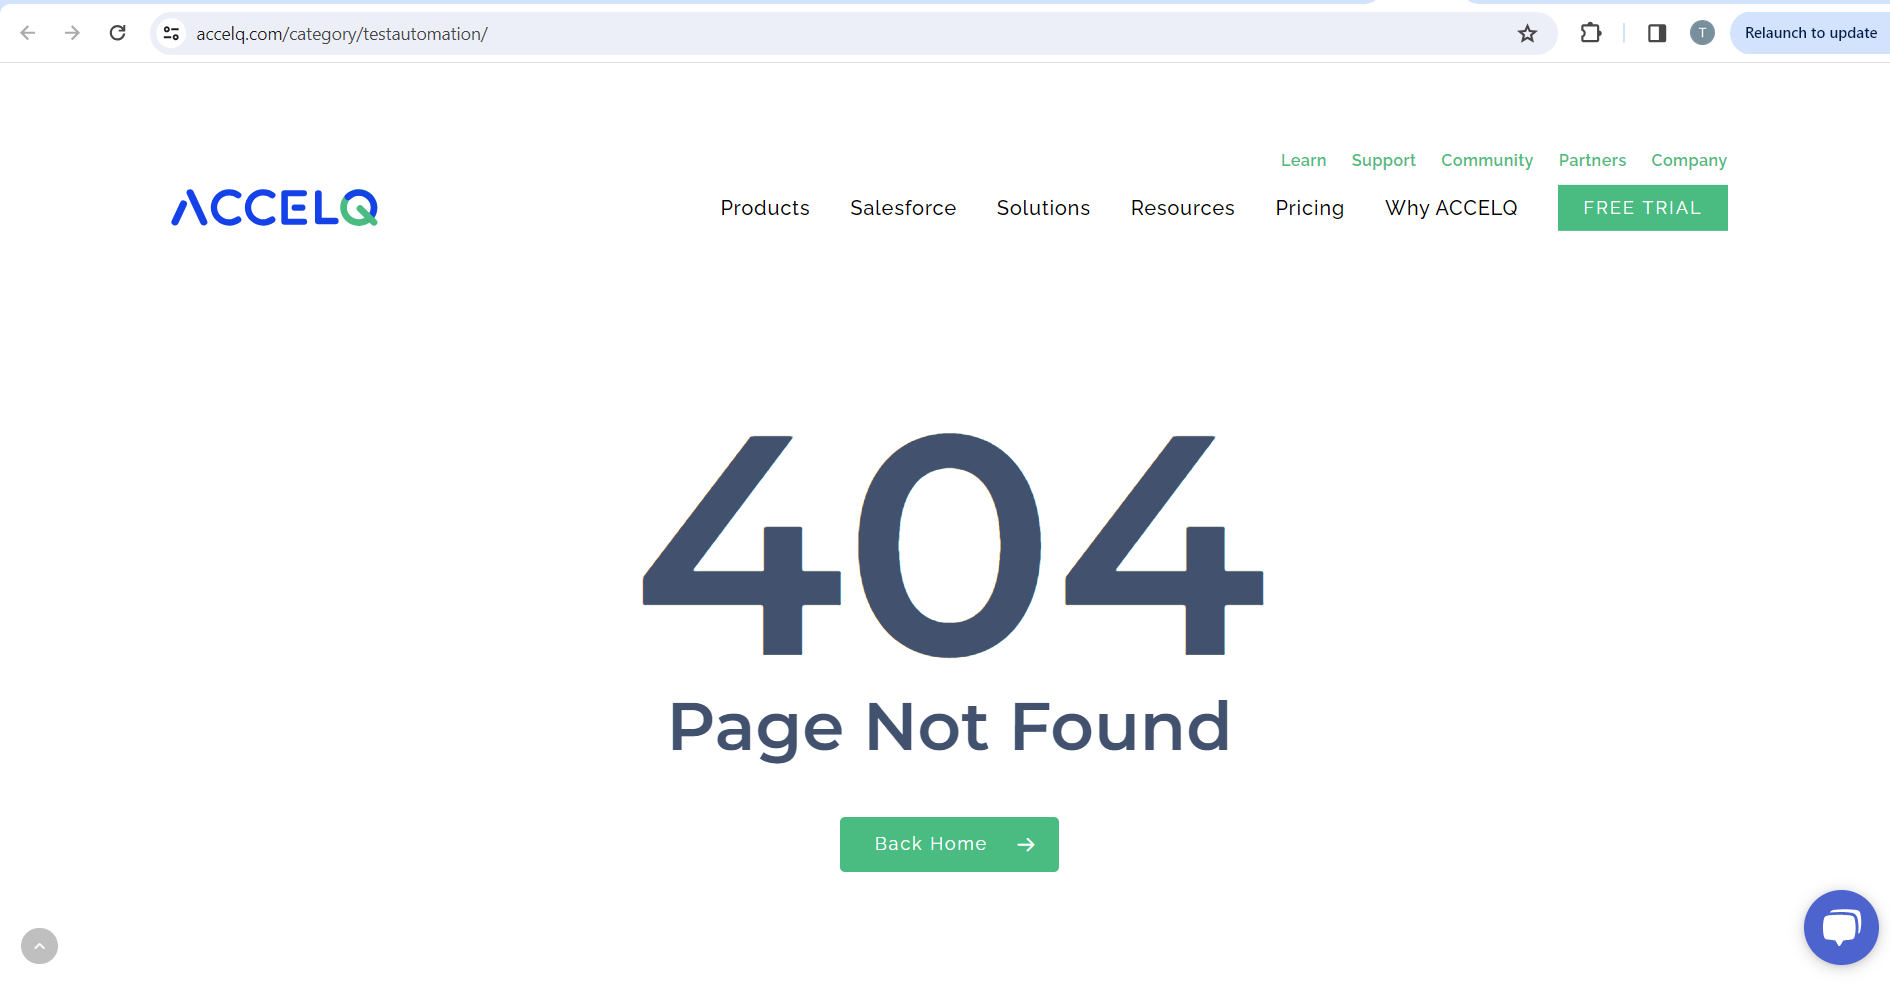 Ein 404-Fehler wird angezeigt, nachdem Sie auf den Link Testautomatisierung geklickt haben